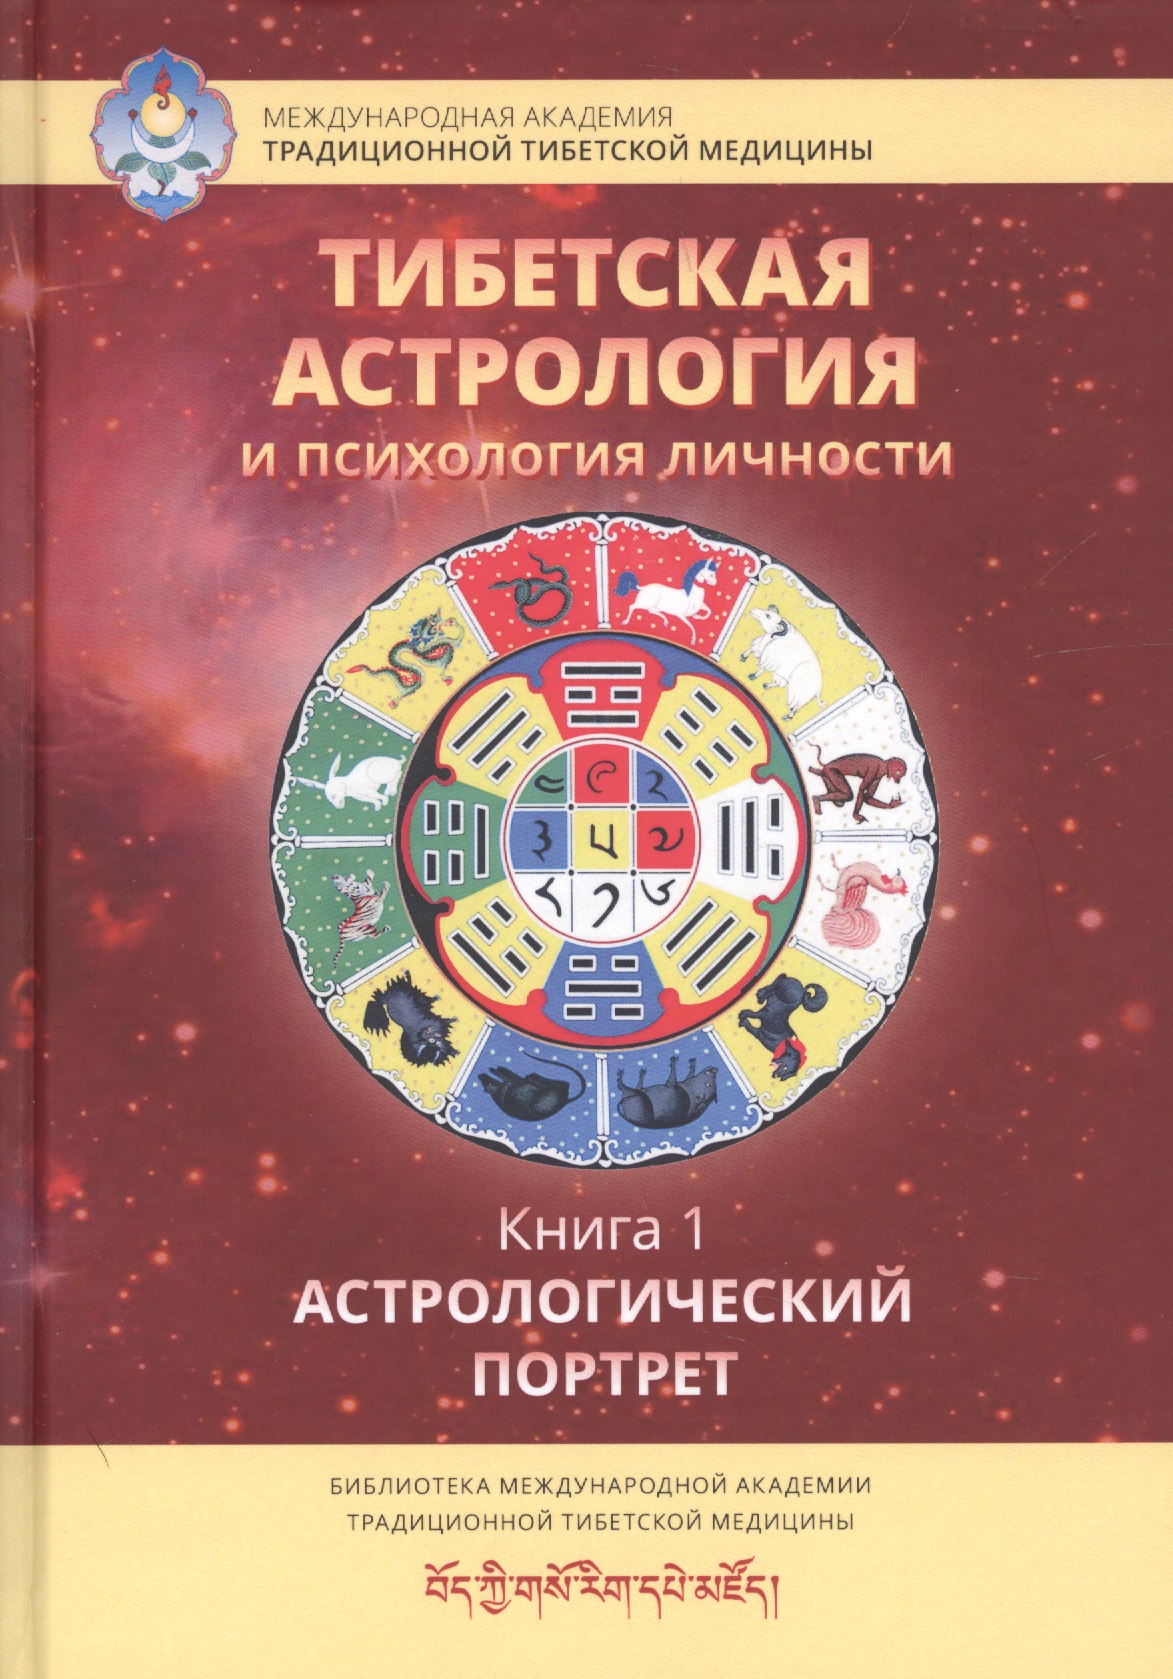 Тибетская астрология и психология личности. Книга 1. Астрологический портрет доржи лобсанг основы тибетской астрологии